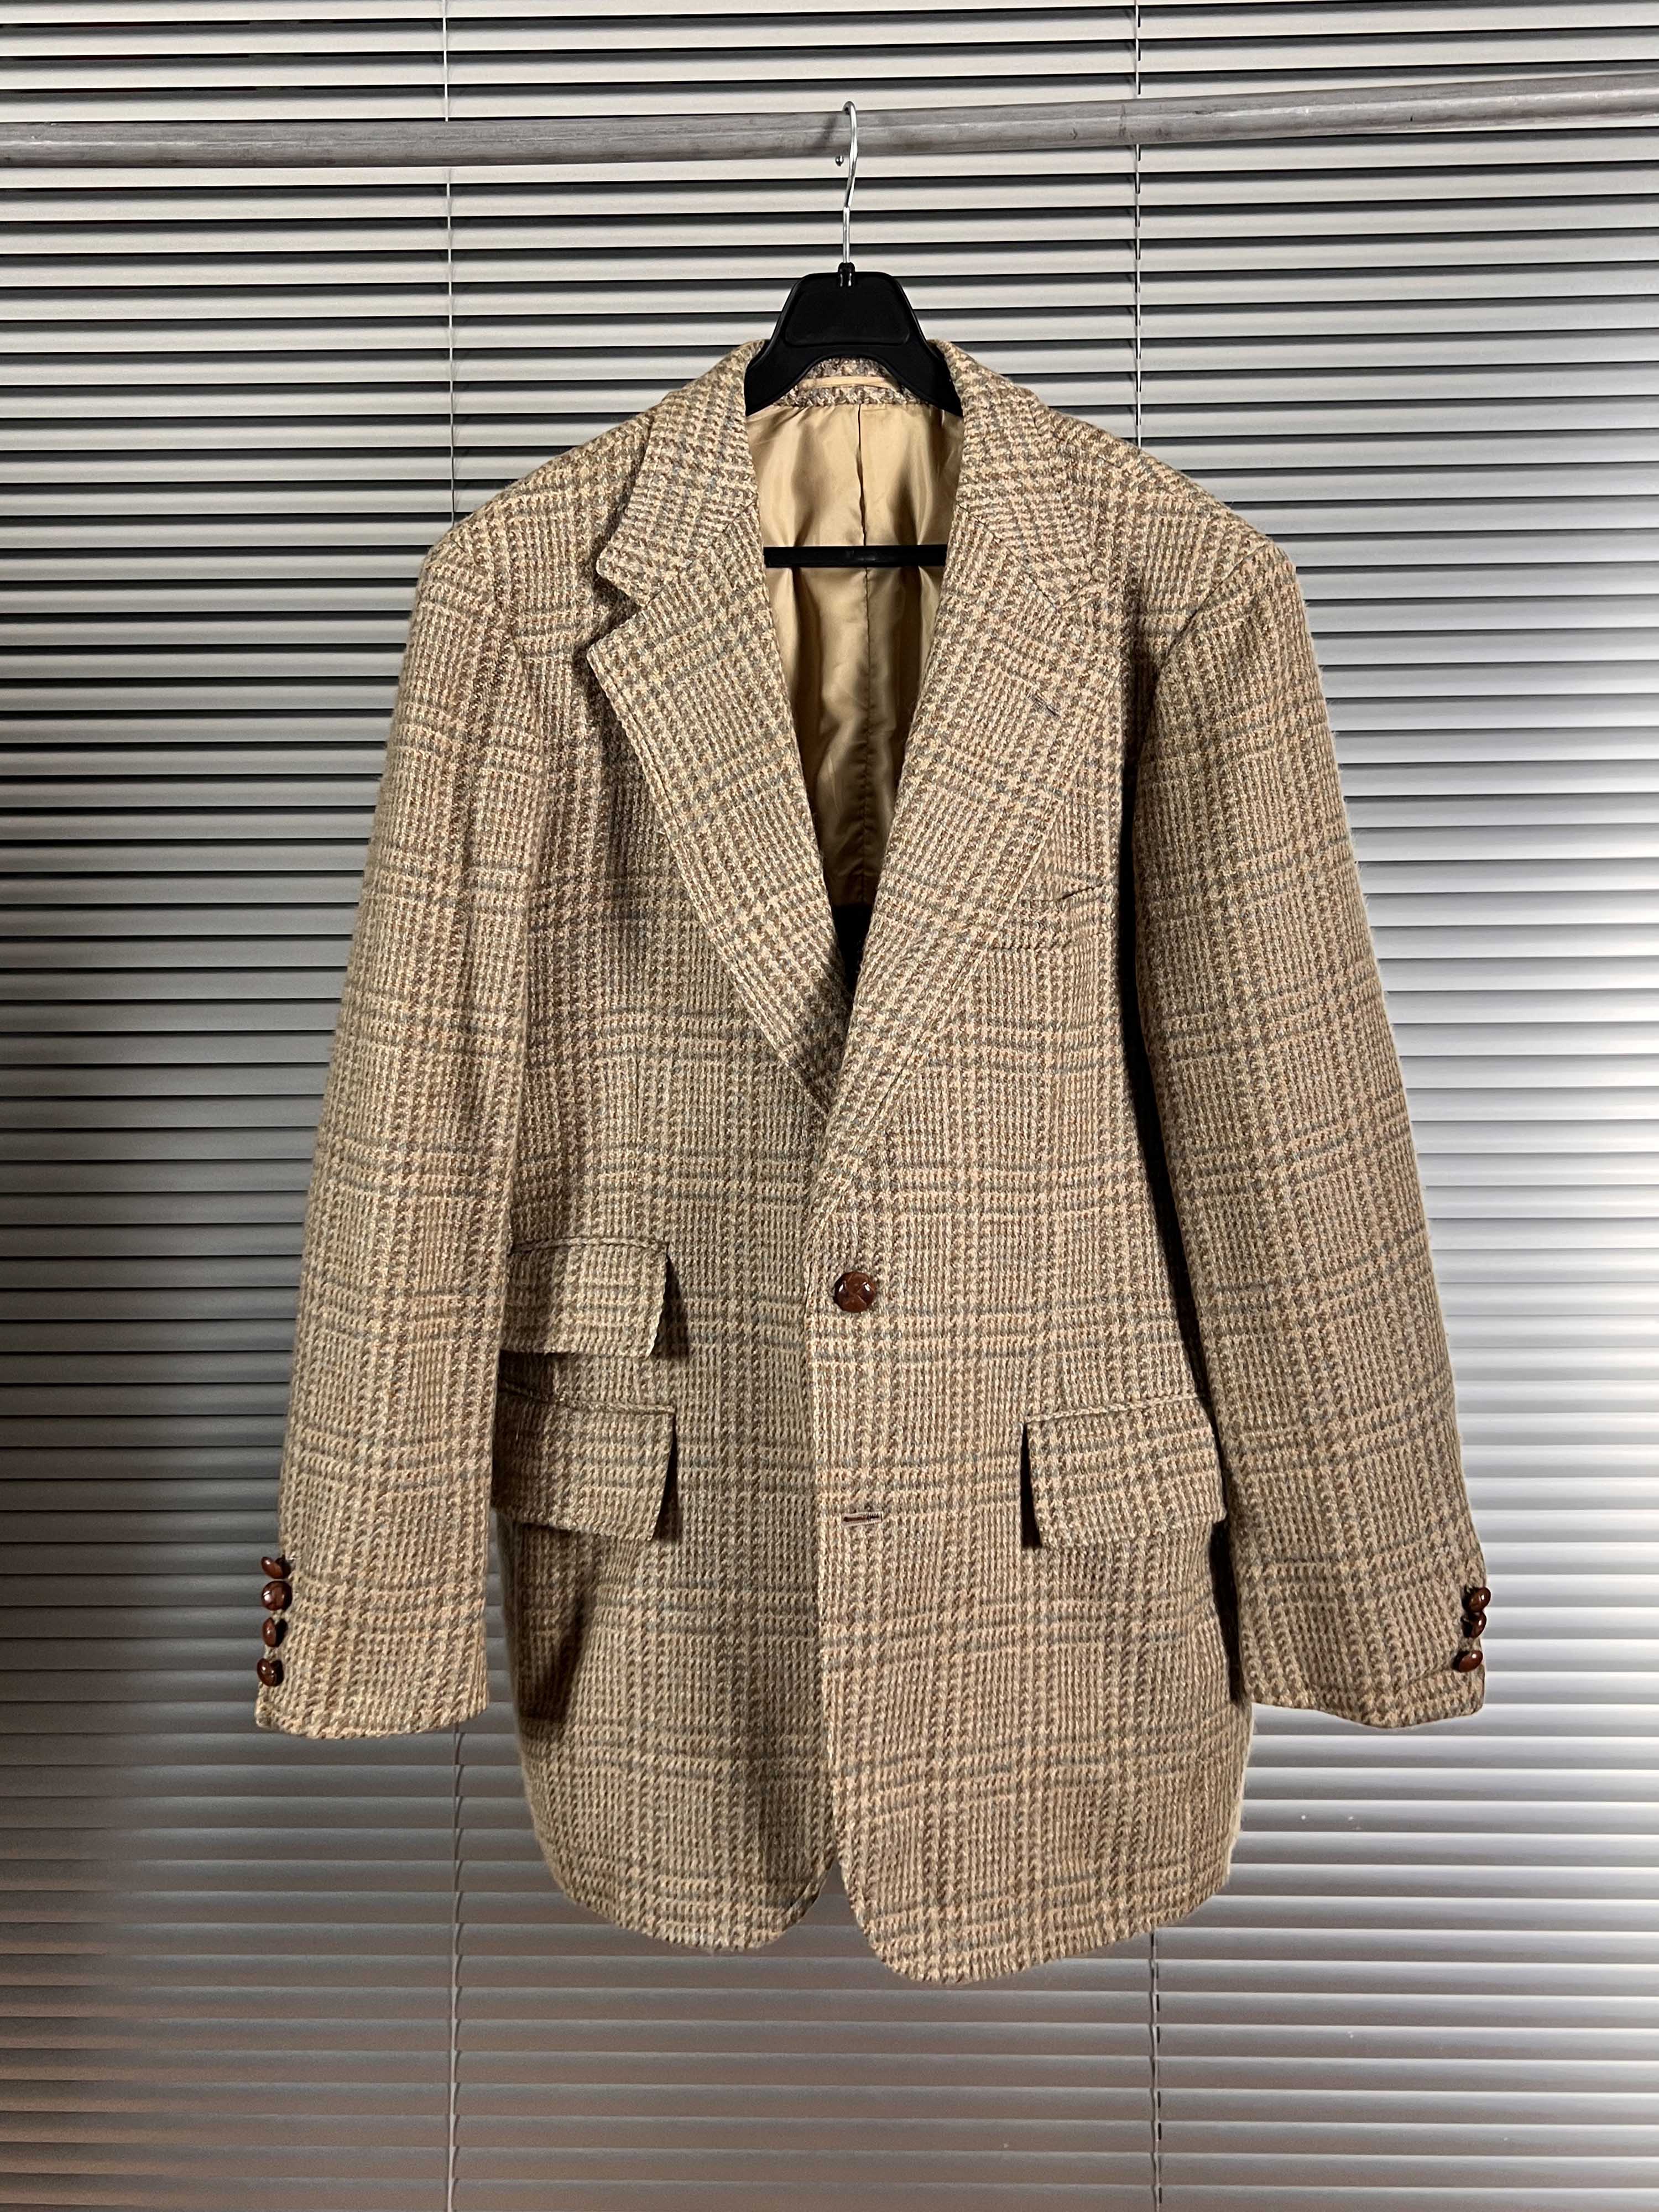 J.PRESS fabric by William Brown tweed jacket